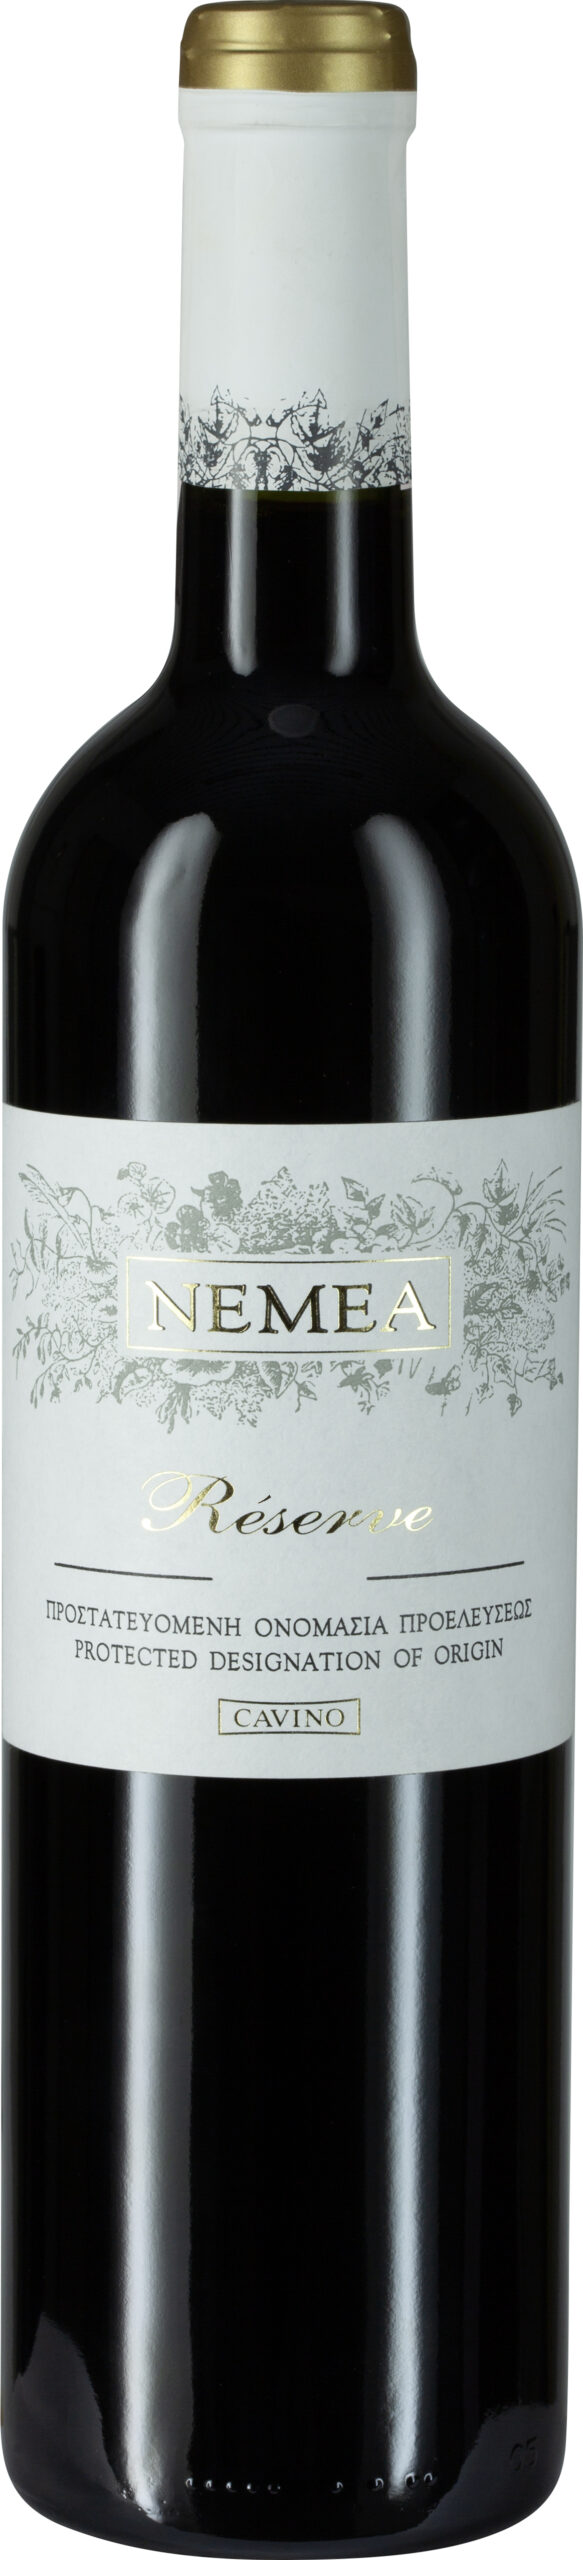 Reserve - Nemea Weine g.U. Nemea, Schenk